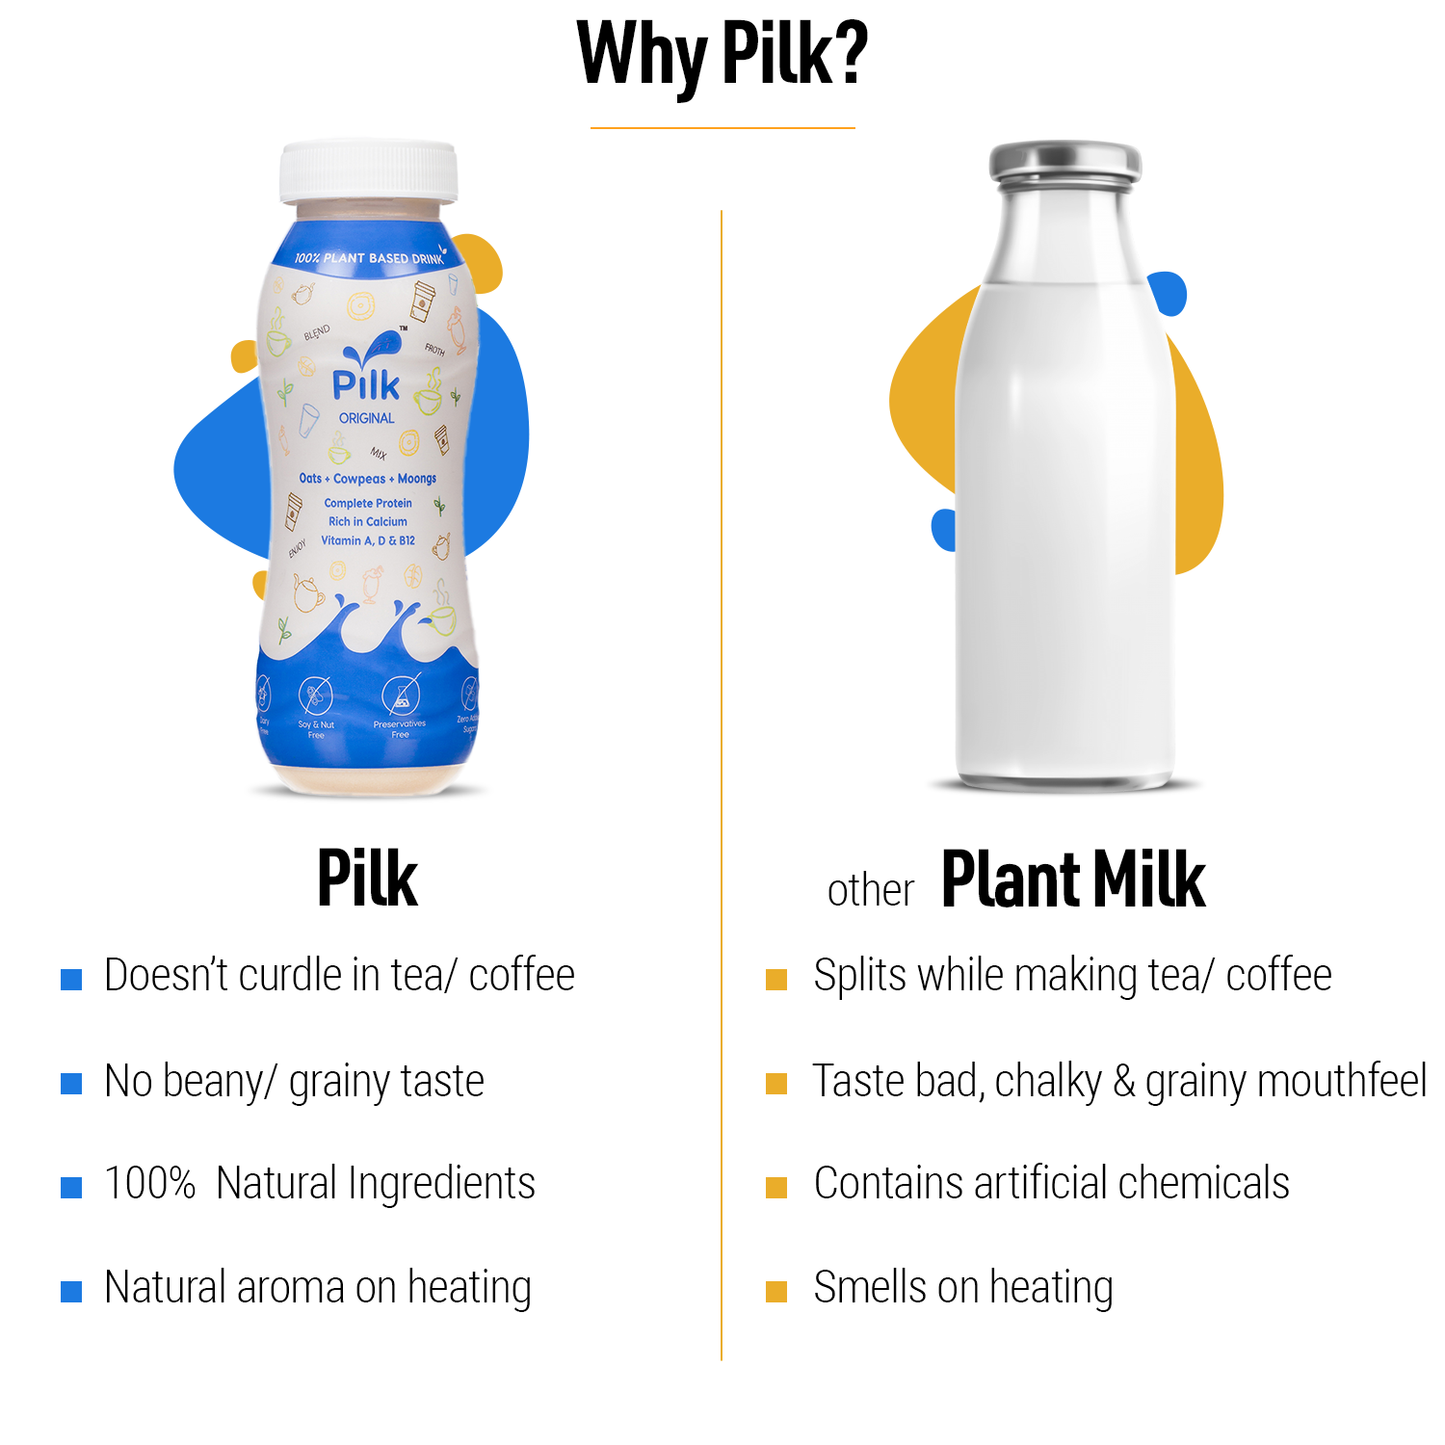 Pilk- [Pack of 24- 200 ml each]